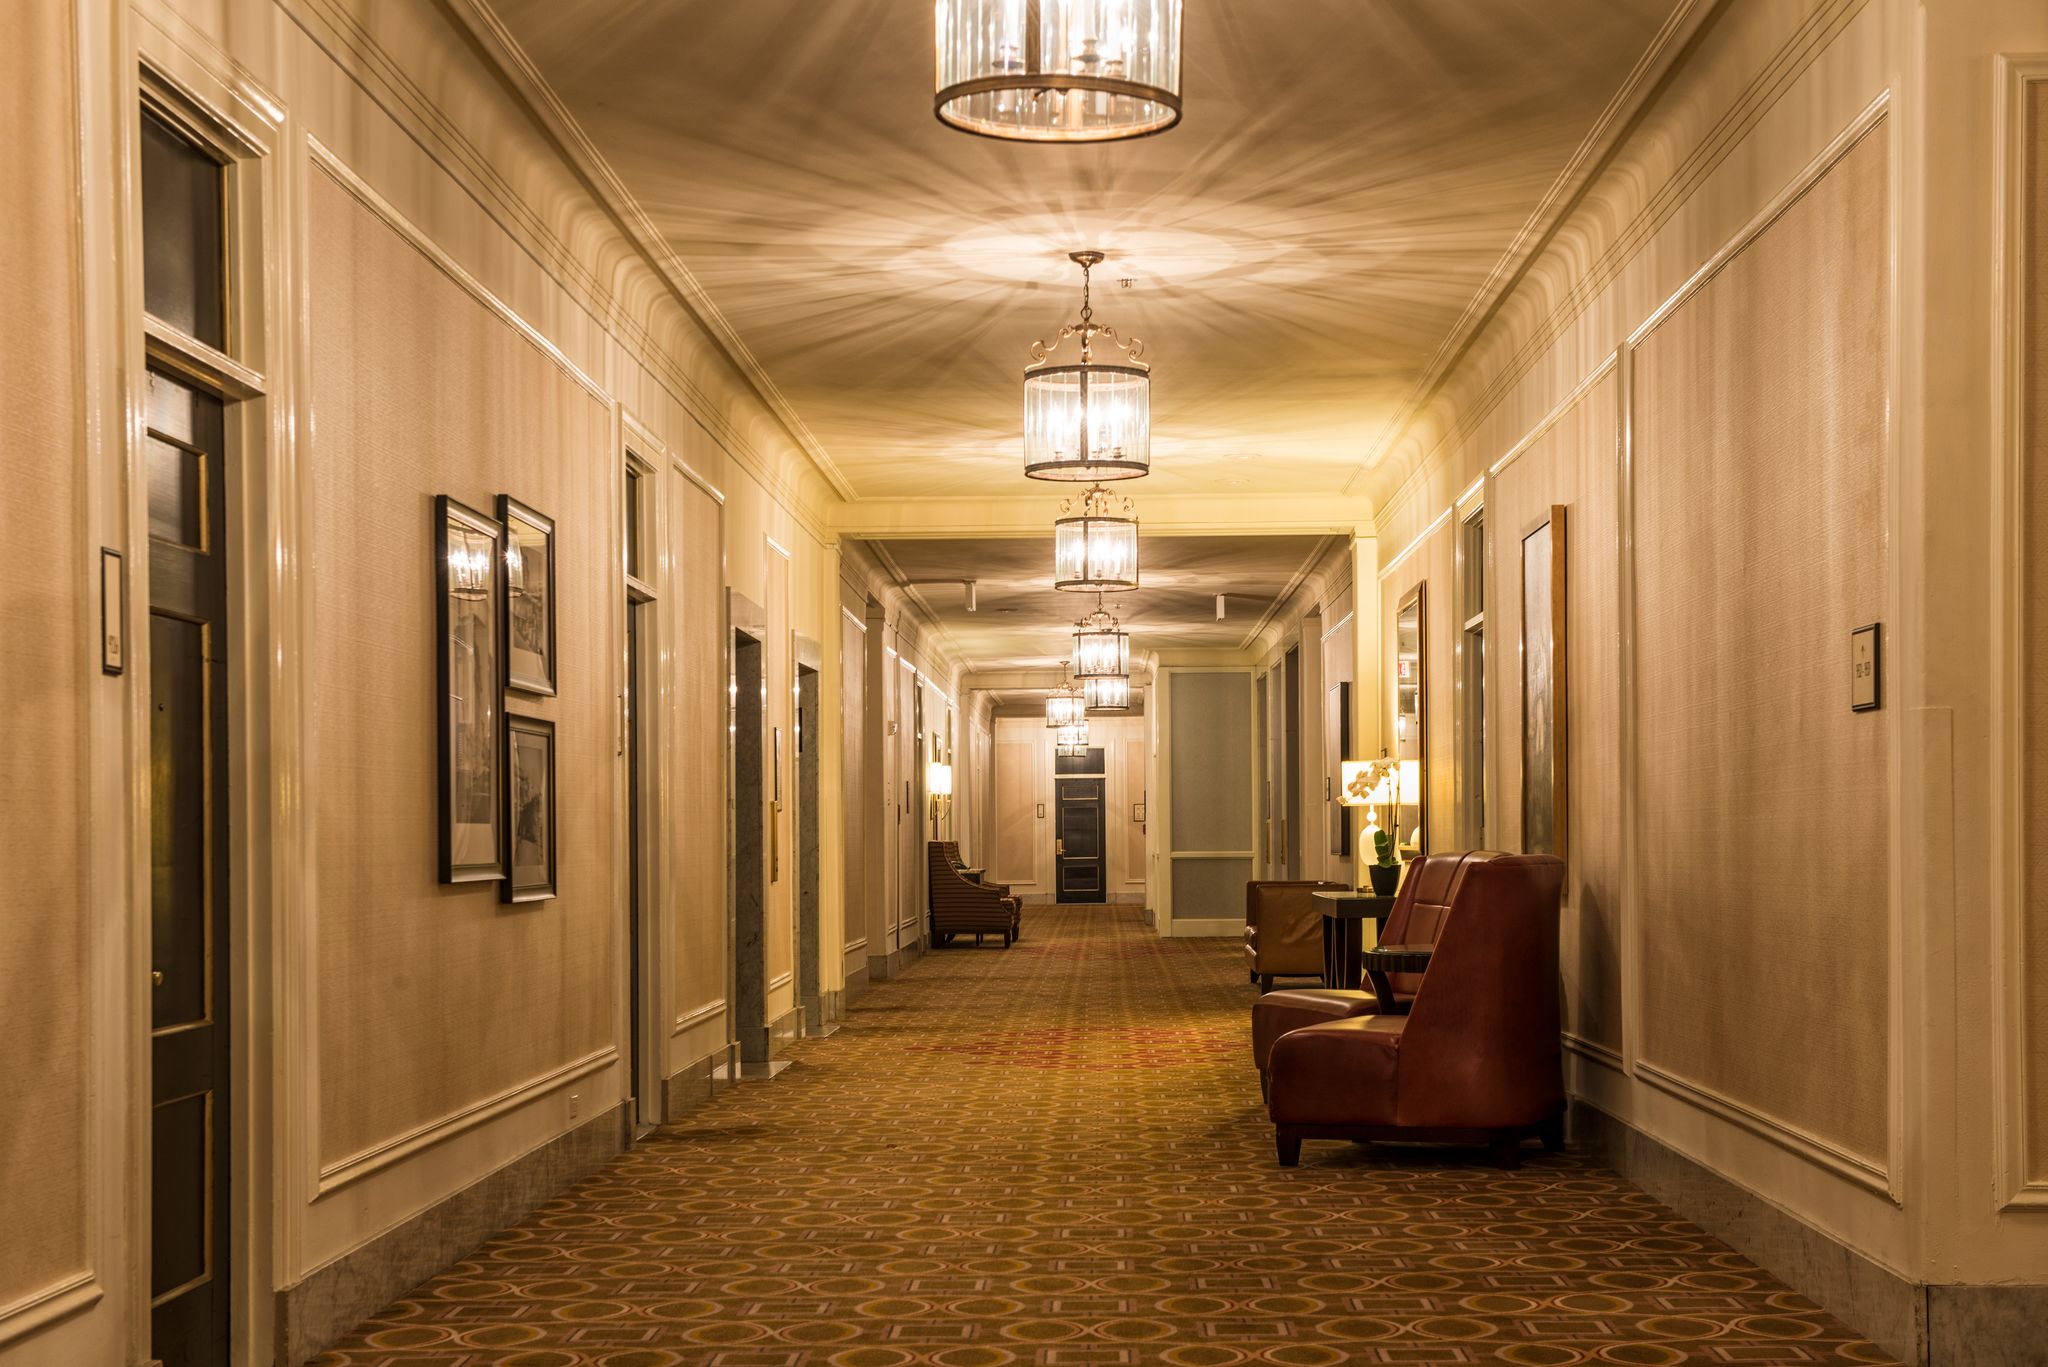 Une photo d'un couloir. | Source : Getty Images